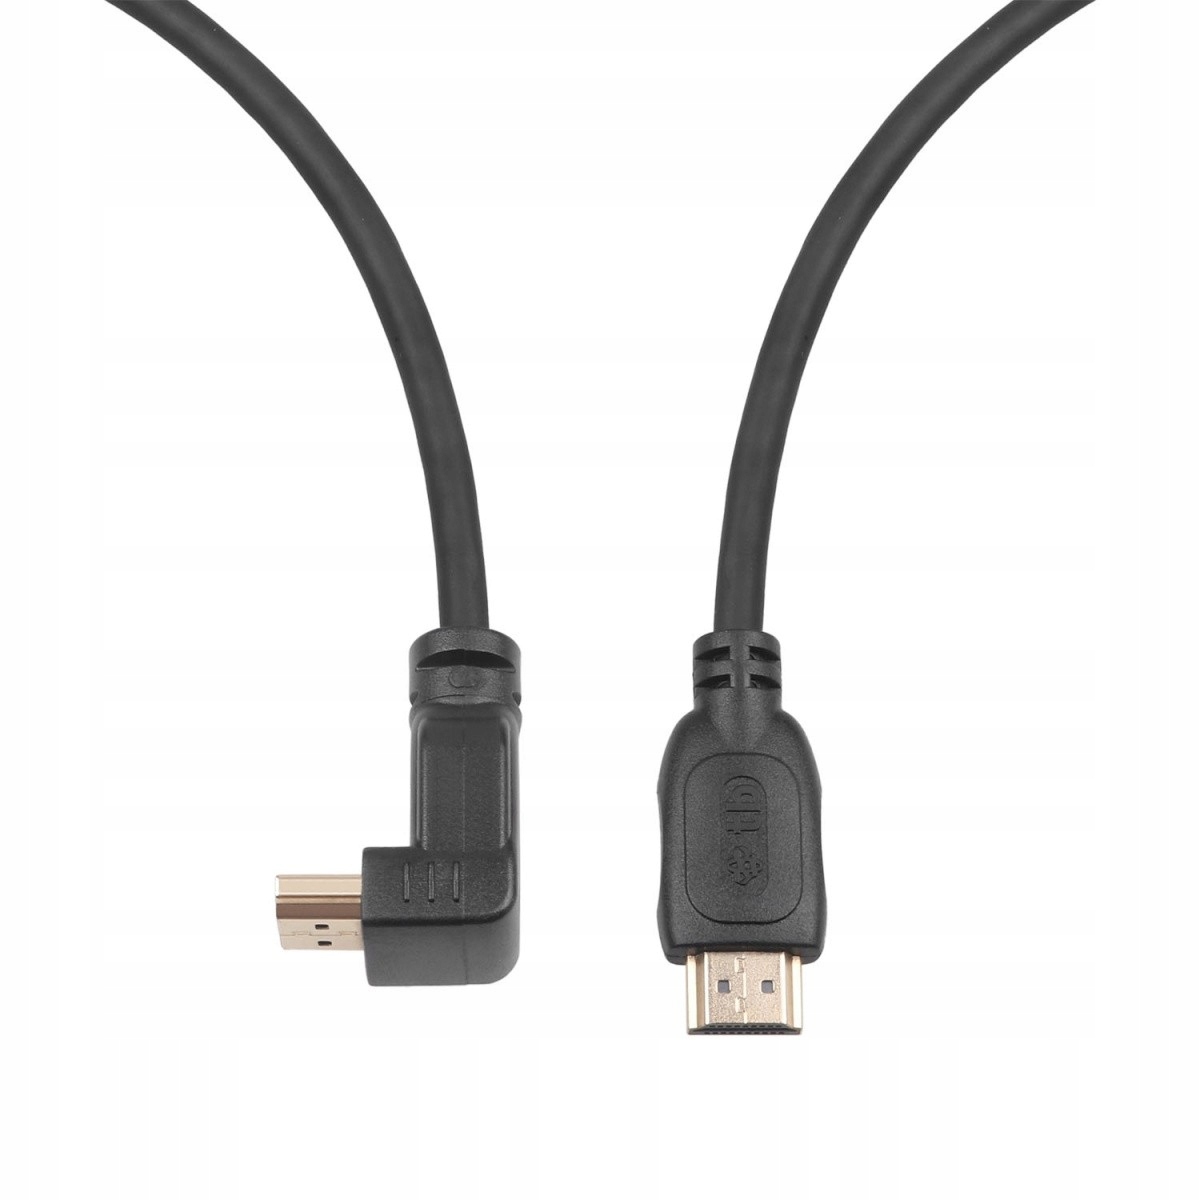 TB HDMI V 2,0 кабель позолоченный 1,8 м угловой вес продукта с единичной упаковкой 0,15 кг